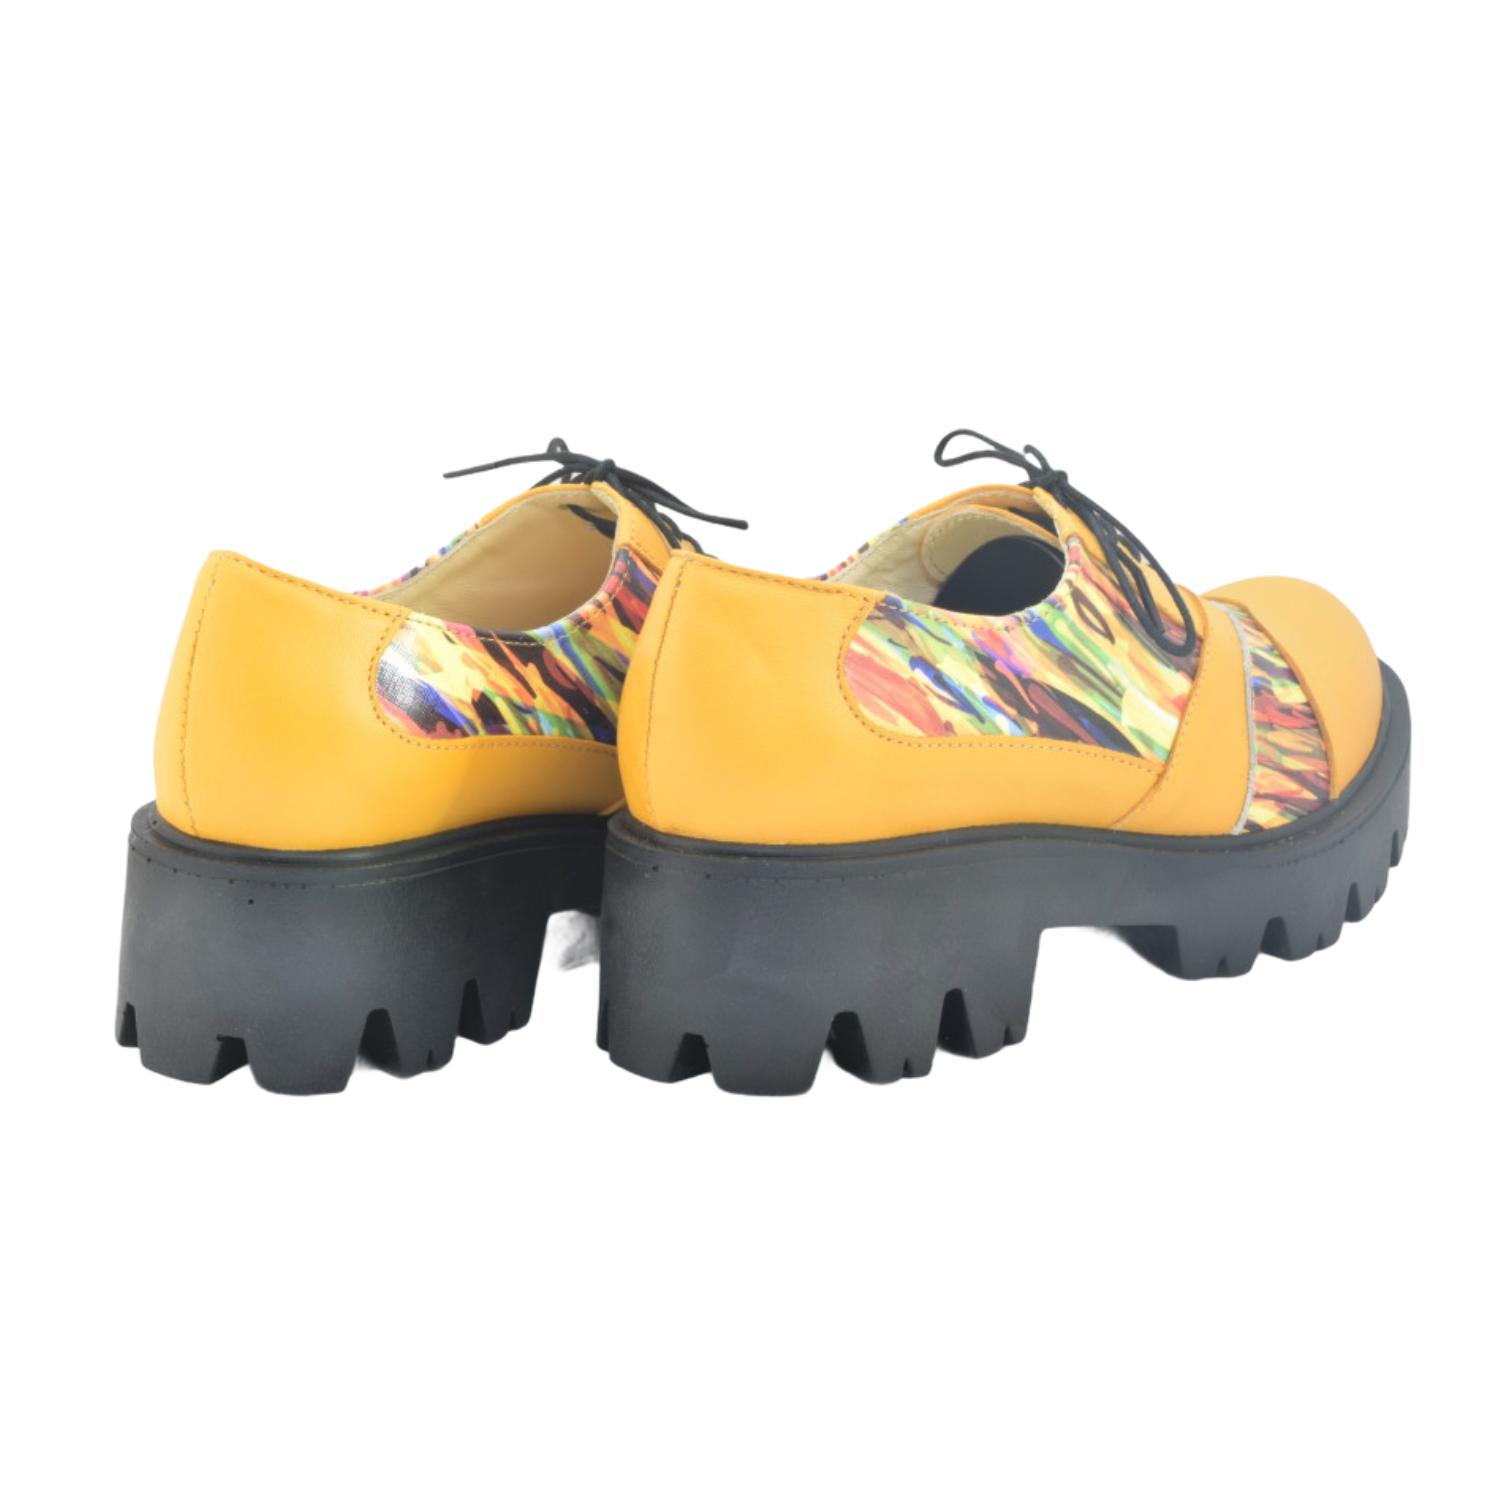 Pantofi galbeni cu imprimeu multicolor